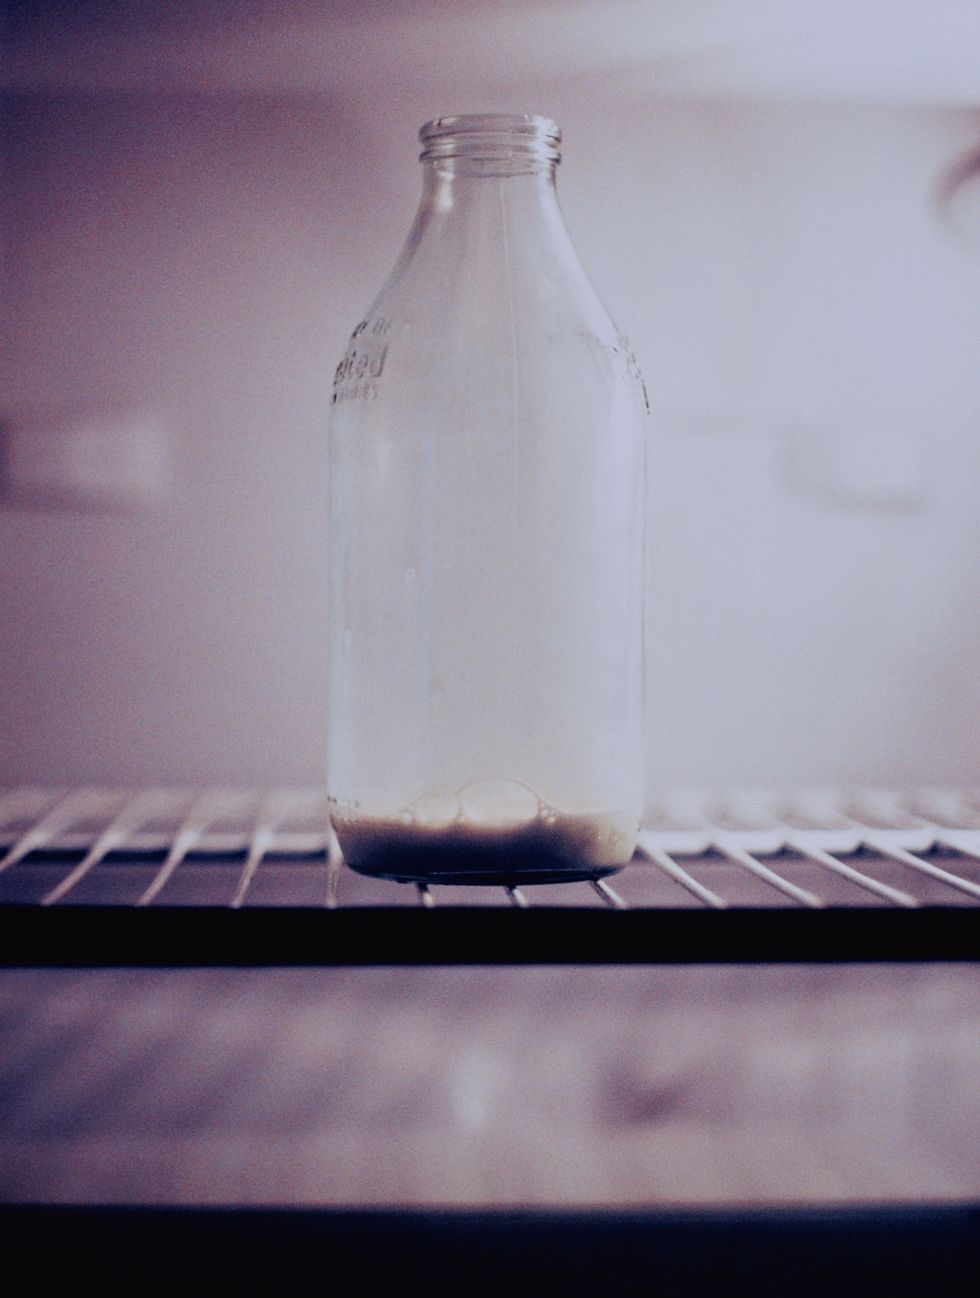 Milk Bottle in Fridge